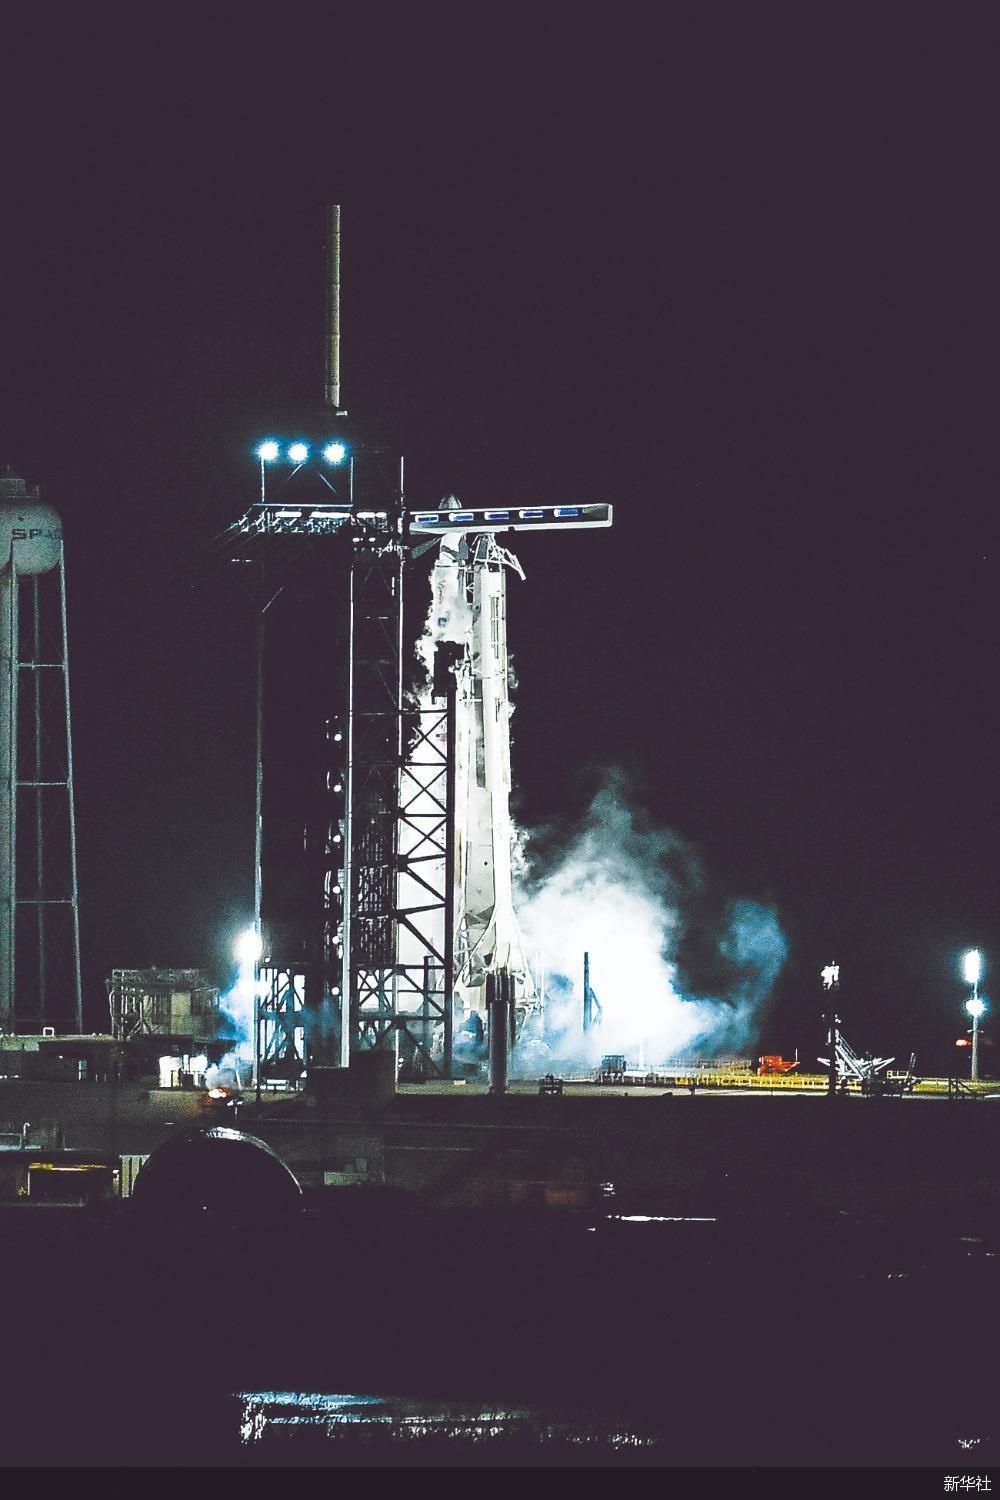 点火前2分钟SpaceX取消载人火箭发射